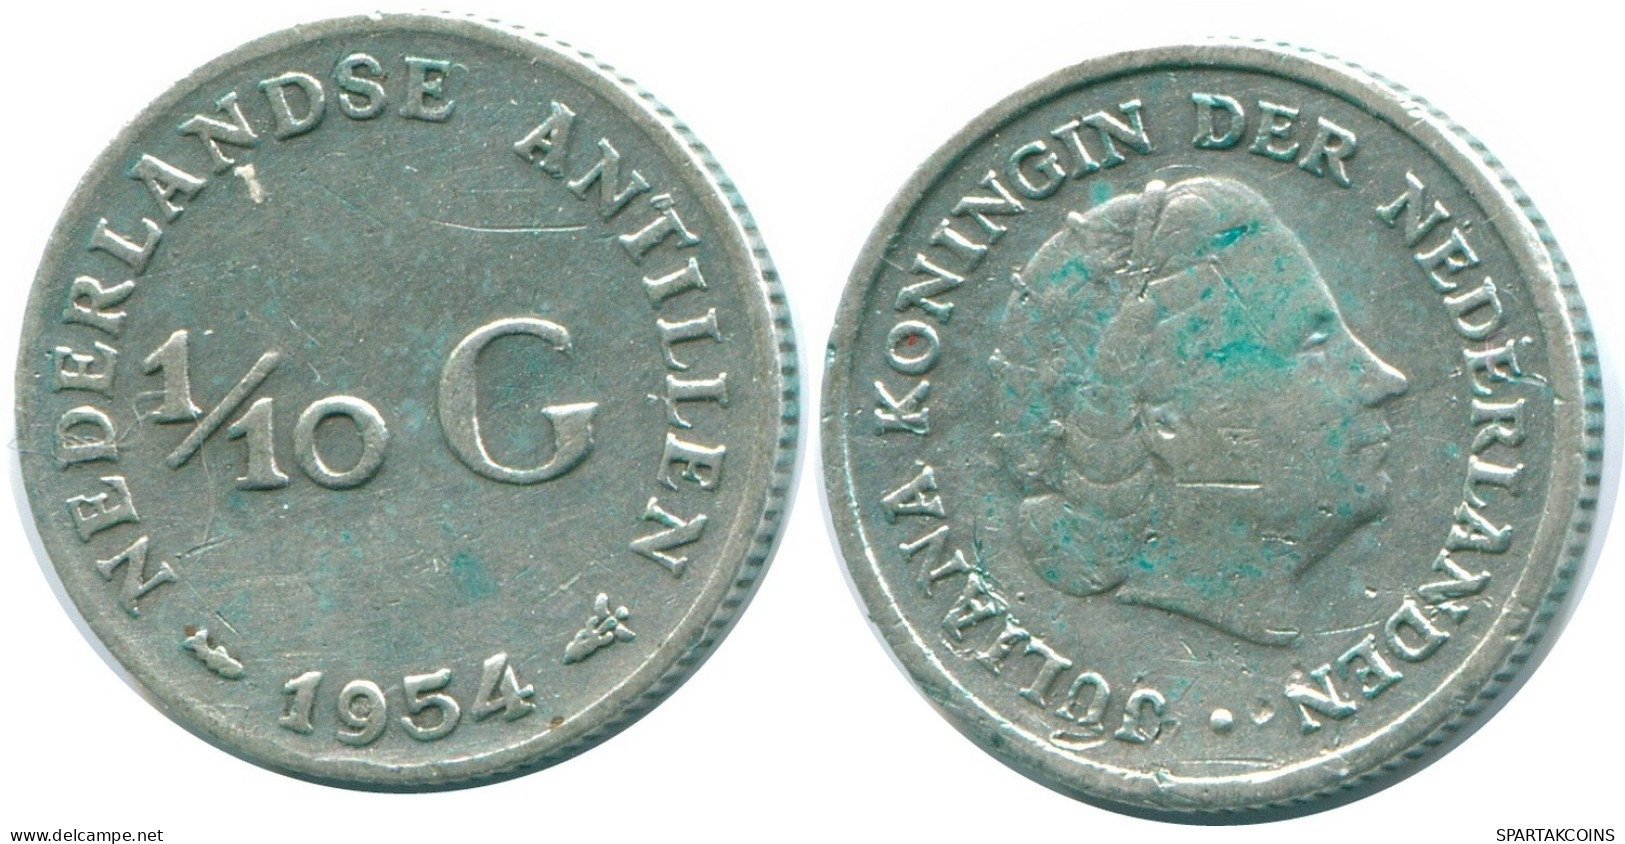 1/10 GULDEN 1954 NIEDERLÄNDISCHE ANTILLEN SILBER Koloniale Münze #NL12051.3.D.A - Antilles Néerlandaises